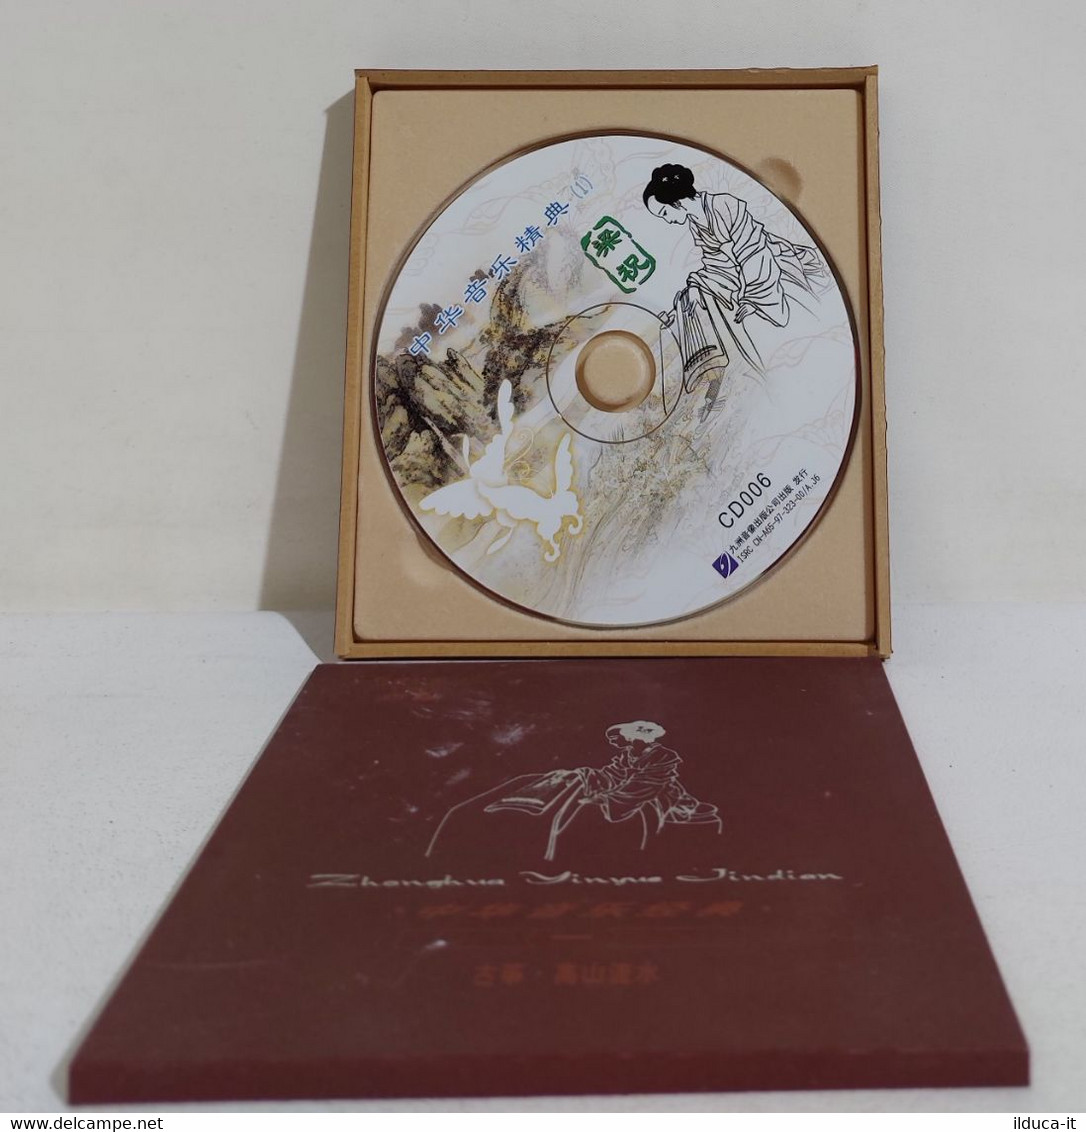 I108357 CD - ZONGHUA YINYUE JINDIAN - Wereldmuziek